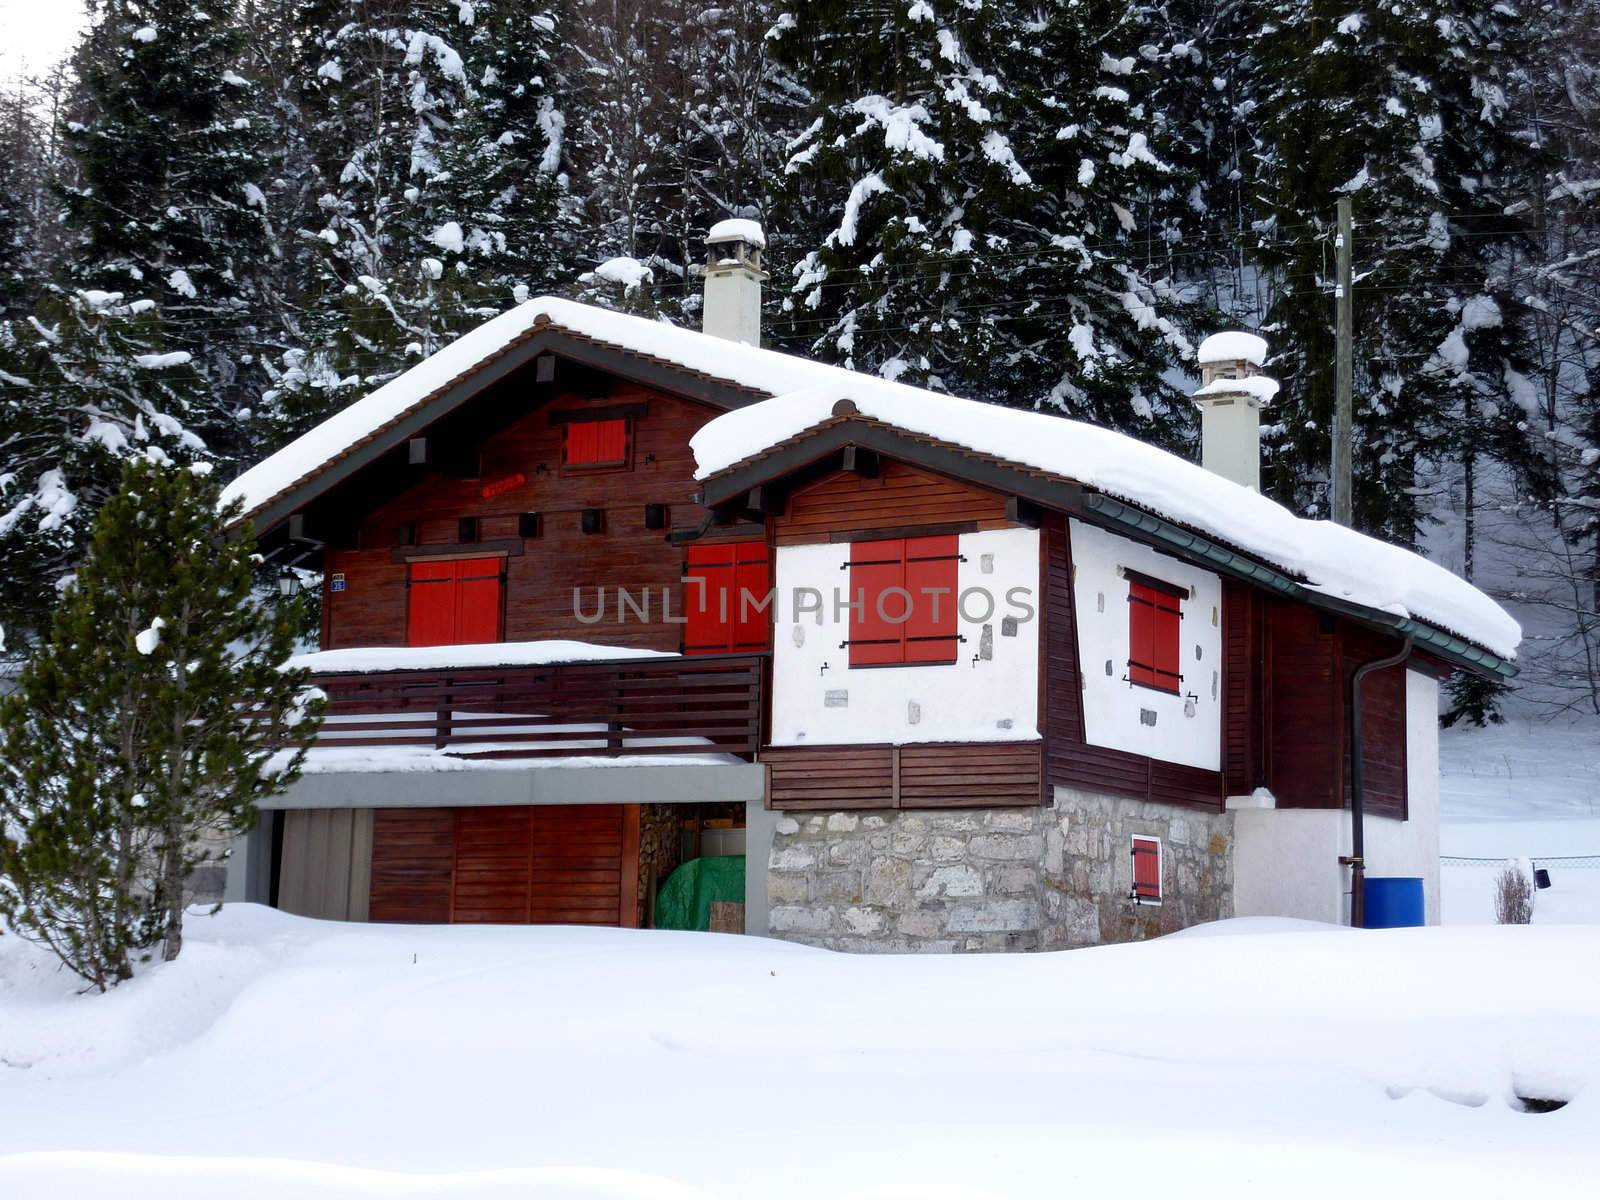 Red shutters on beautiful chalet in Jura mountain, Switzerland, by winter